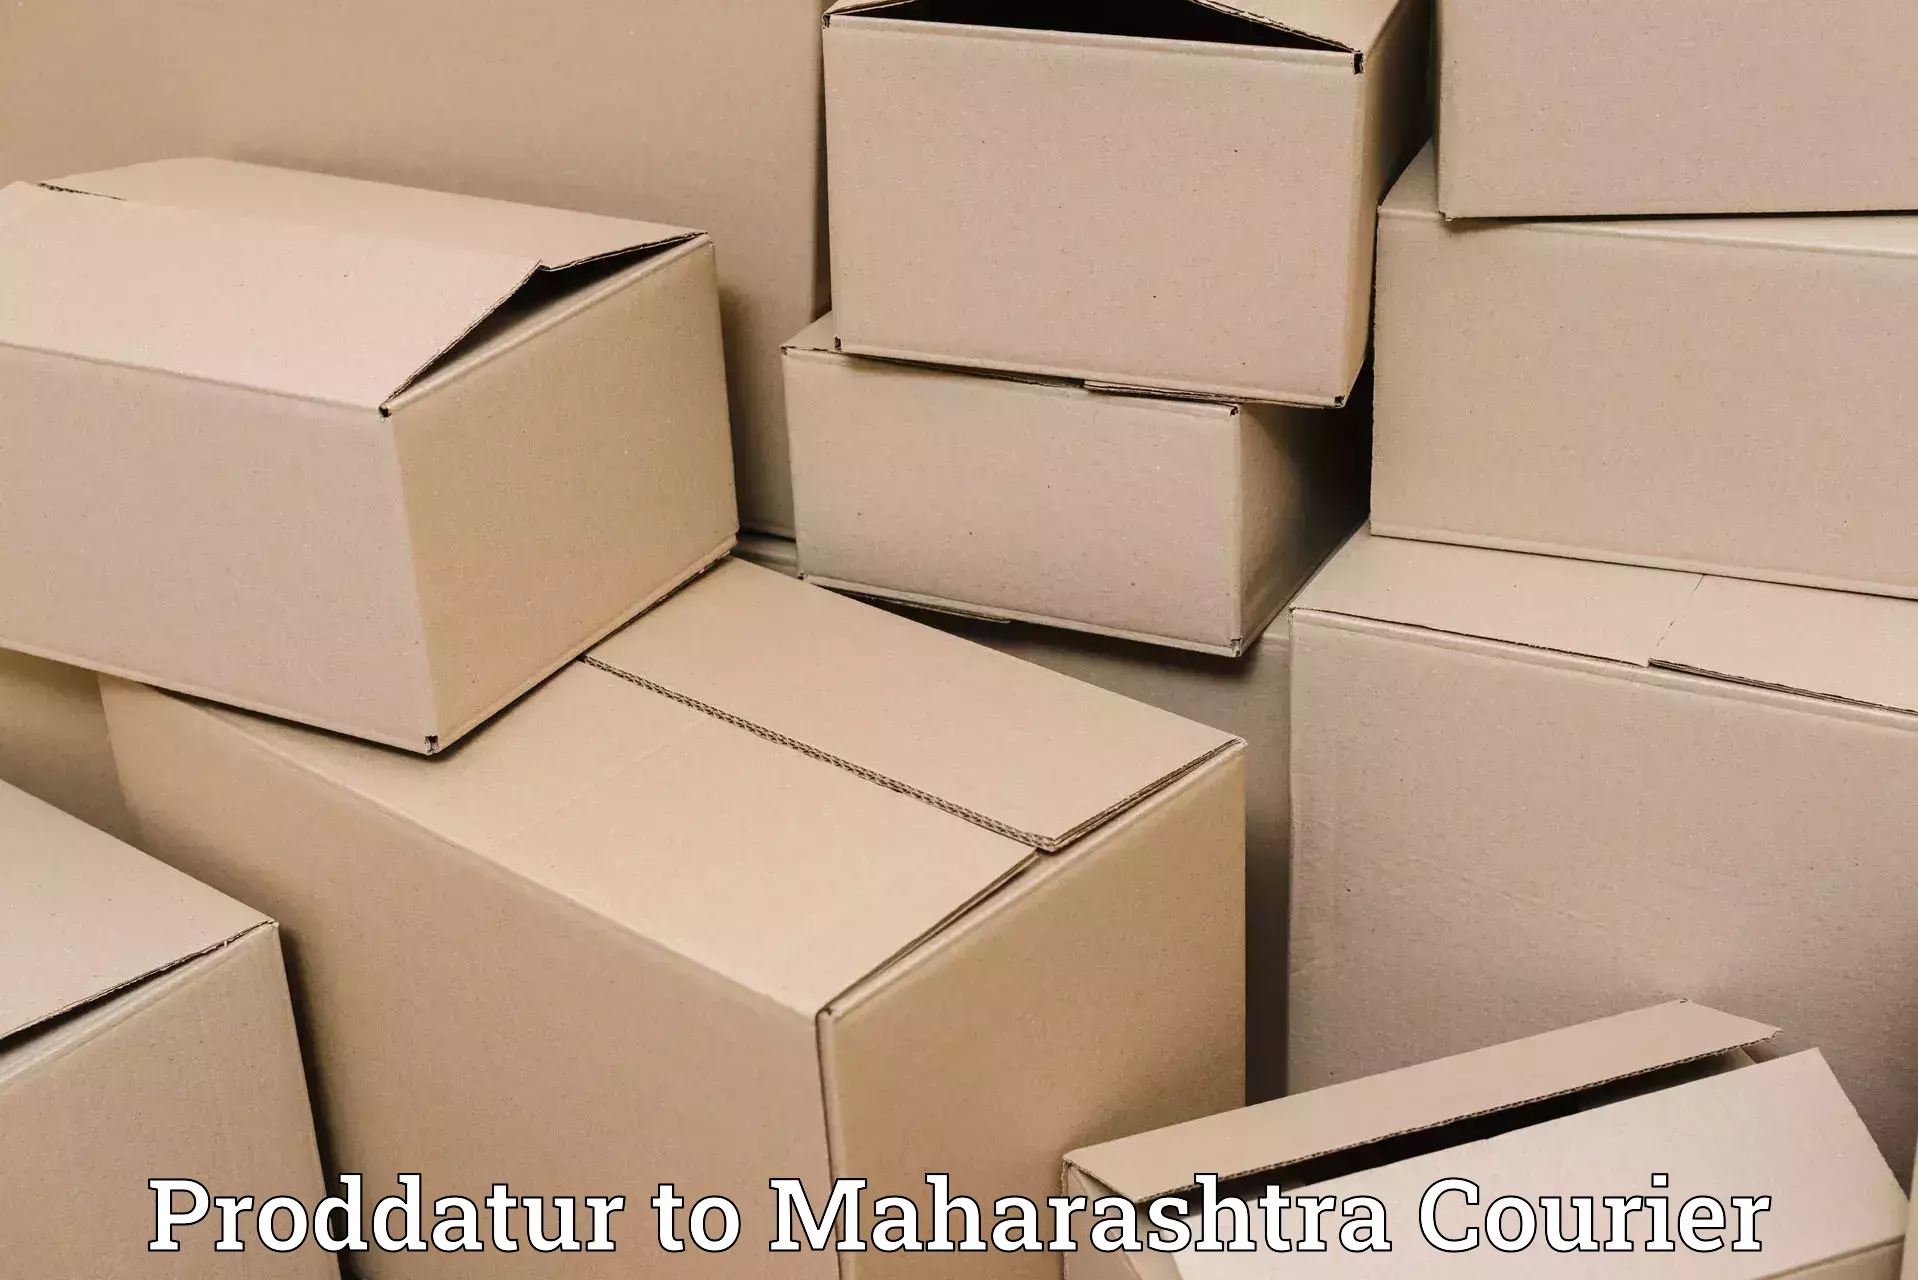 Luggage shipping guide Proddatur to Maharashtra